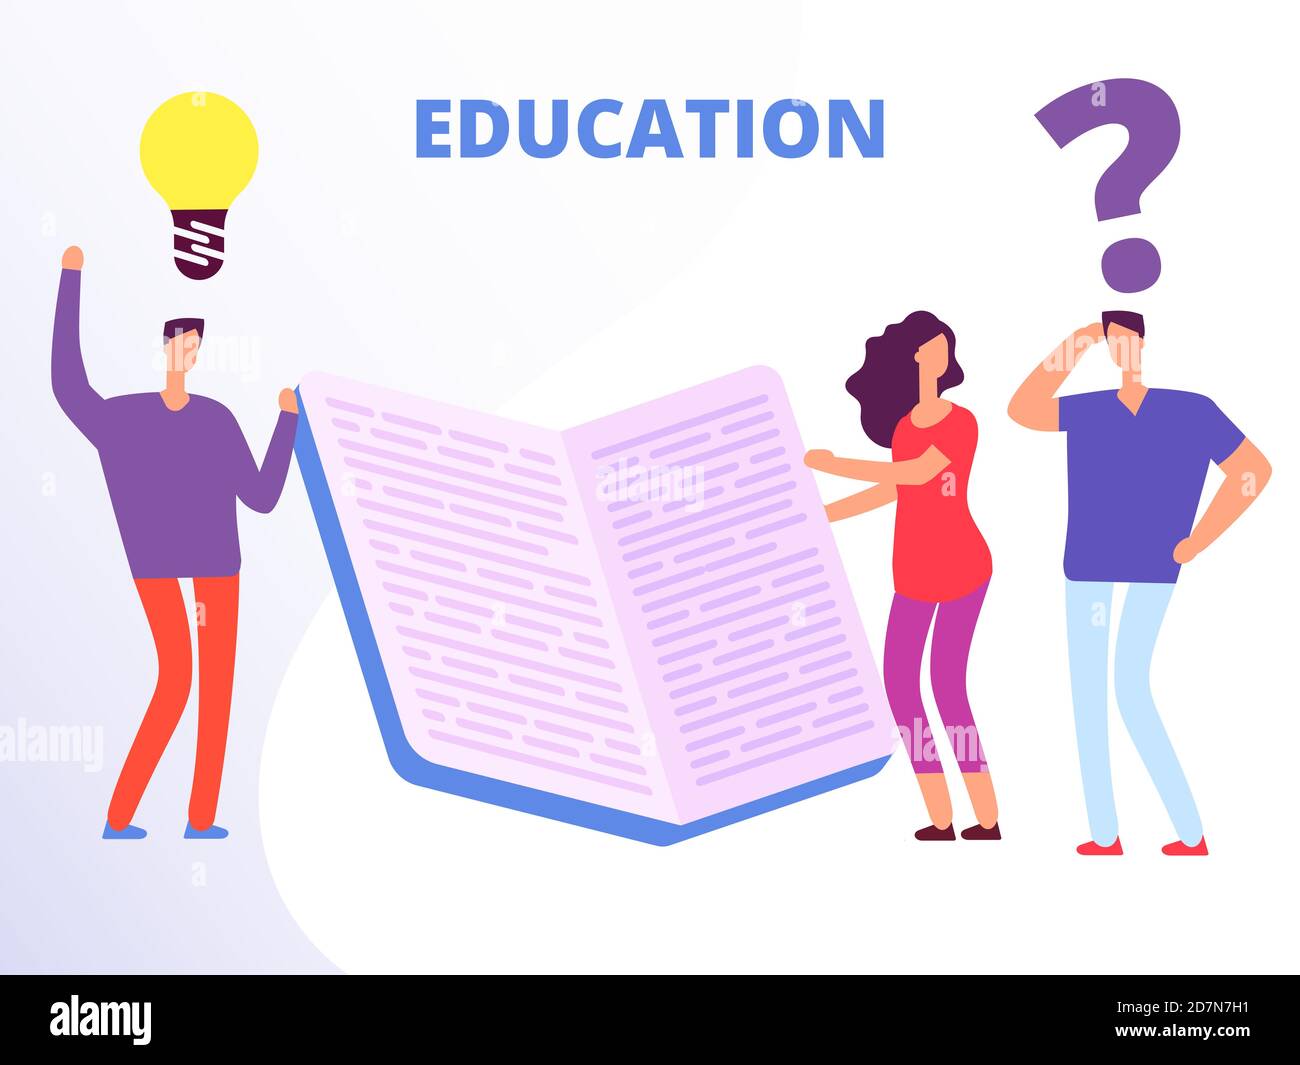 Hilfe in der Bildung, Bildung Kurse Vektor-Konzept. Volksbildung mit Buchillustration Stock Vektor